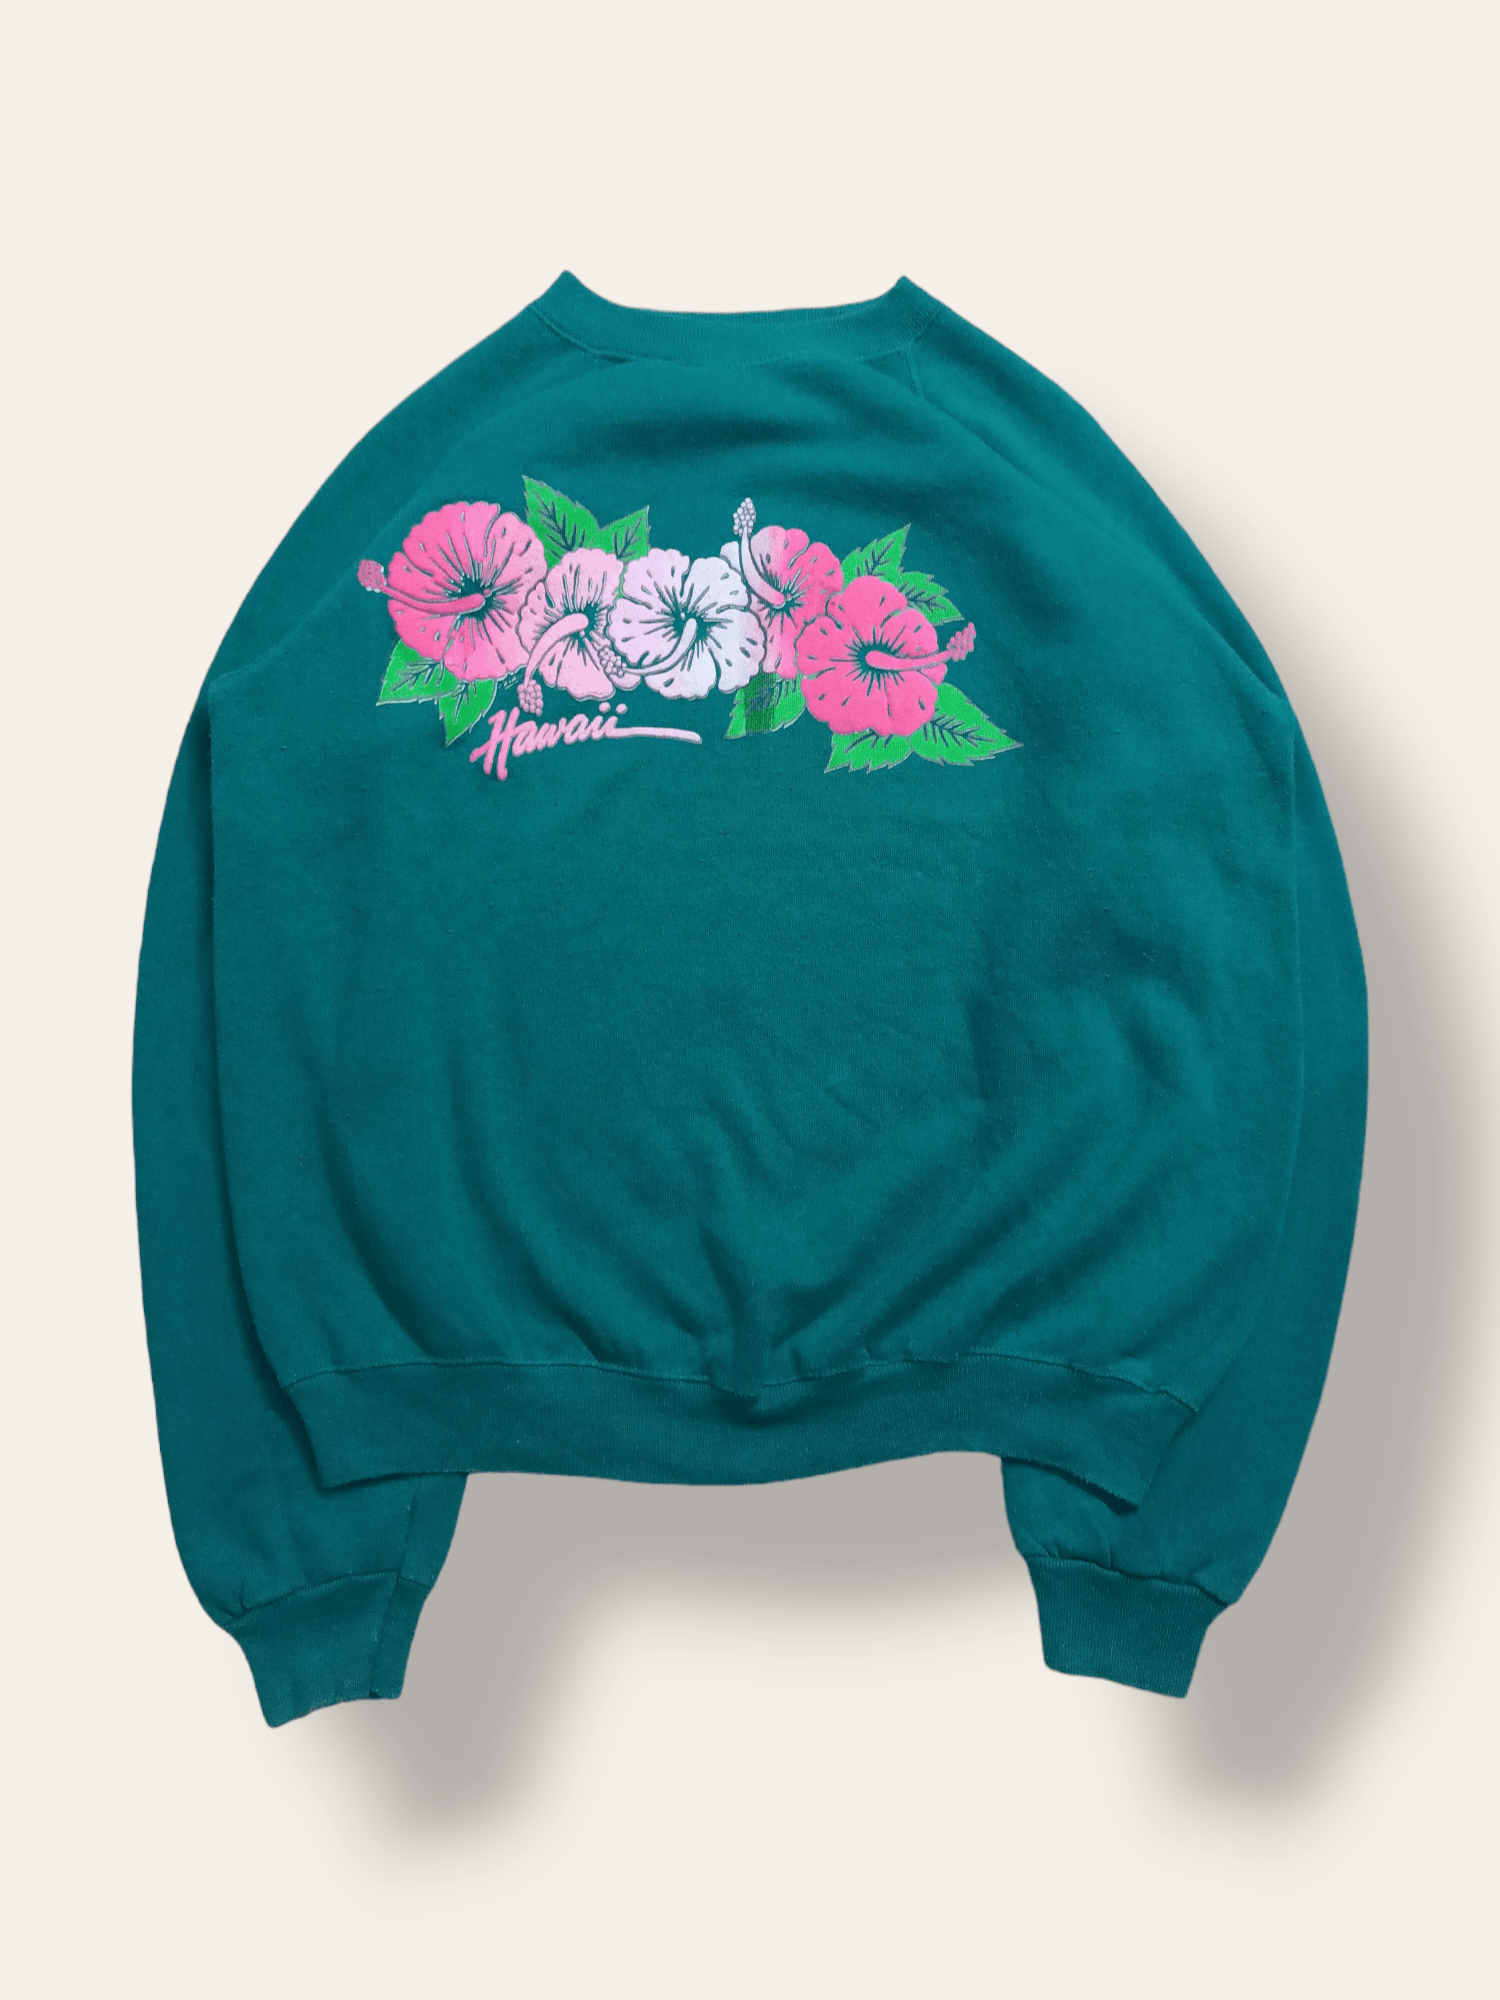 Vintage 80s Hawaii Floral Hibiscus Sweatshirt - 1